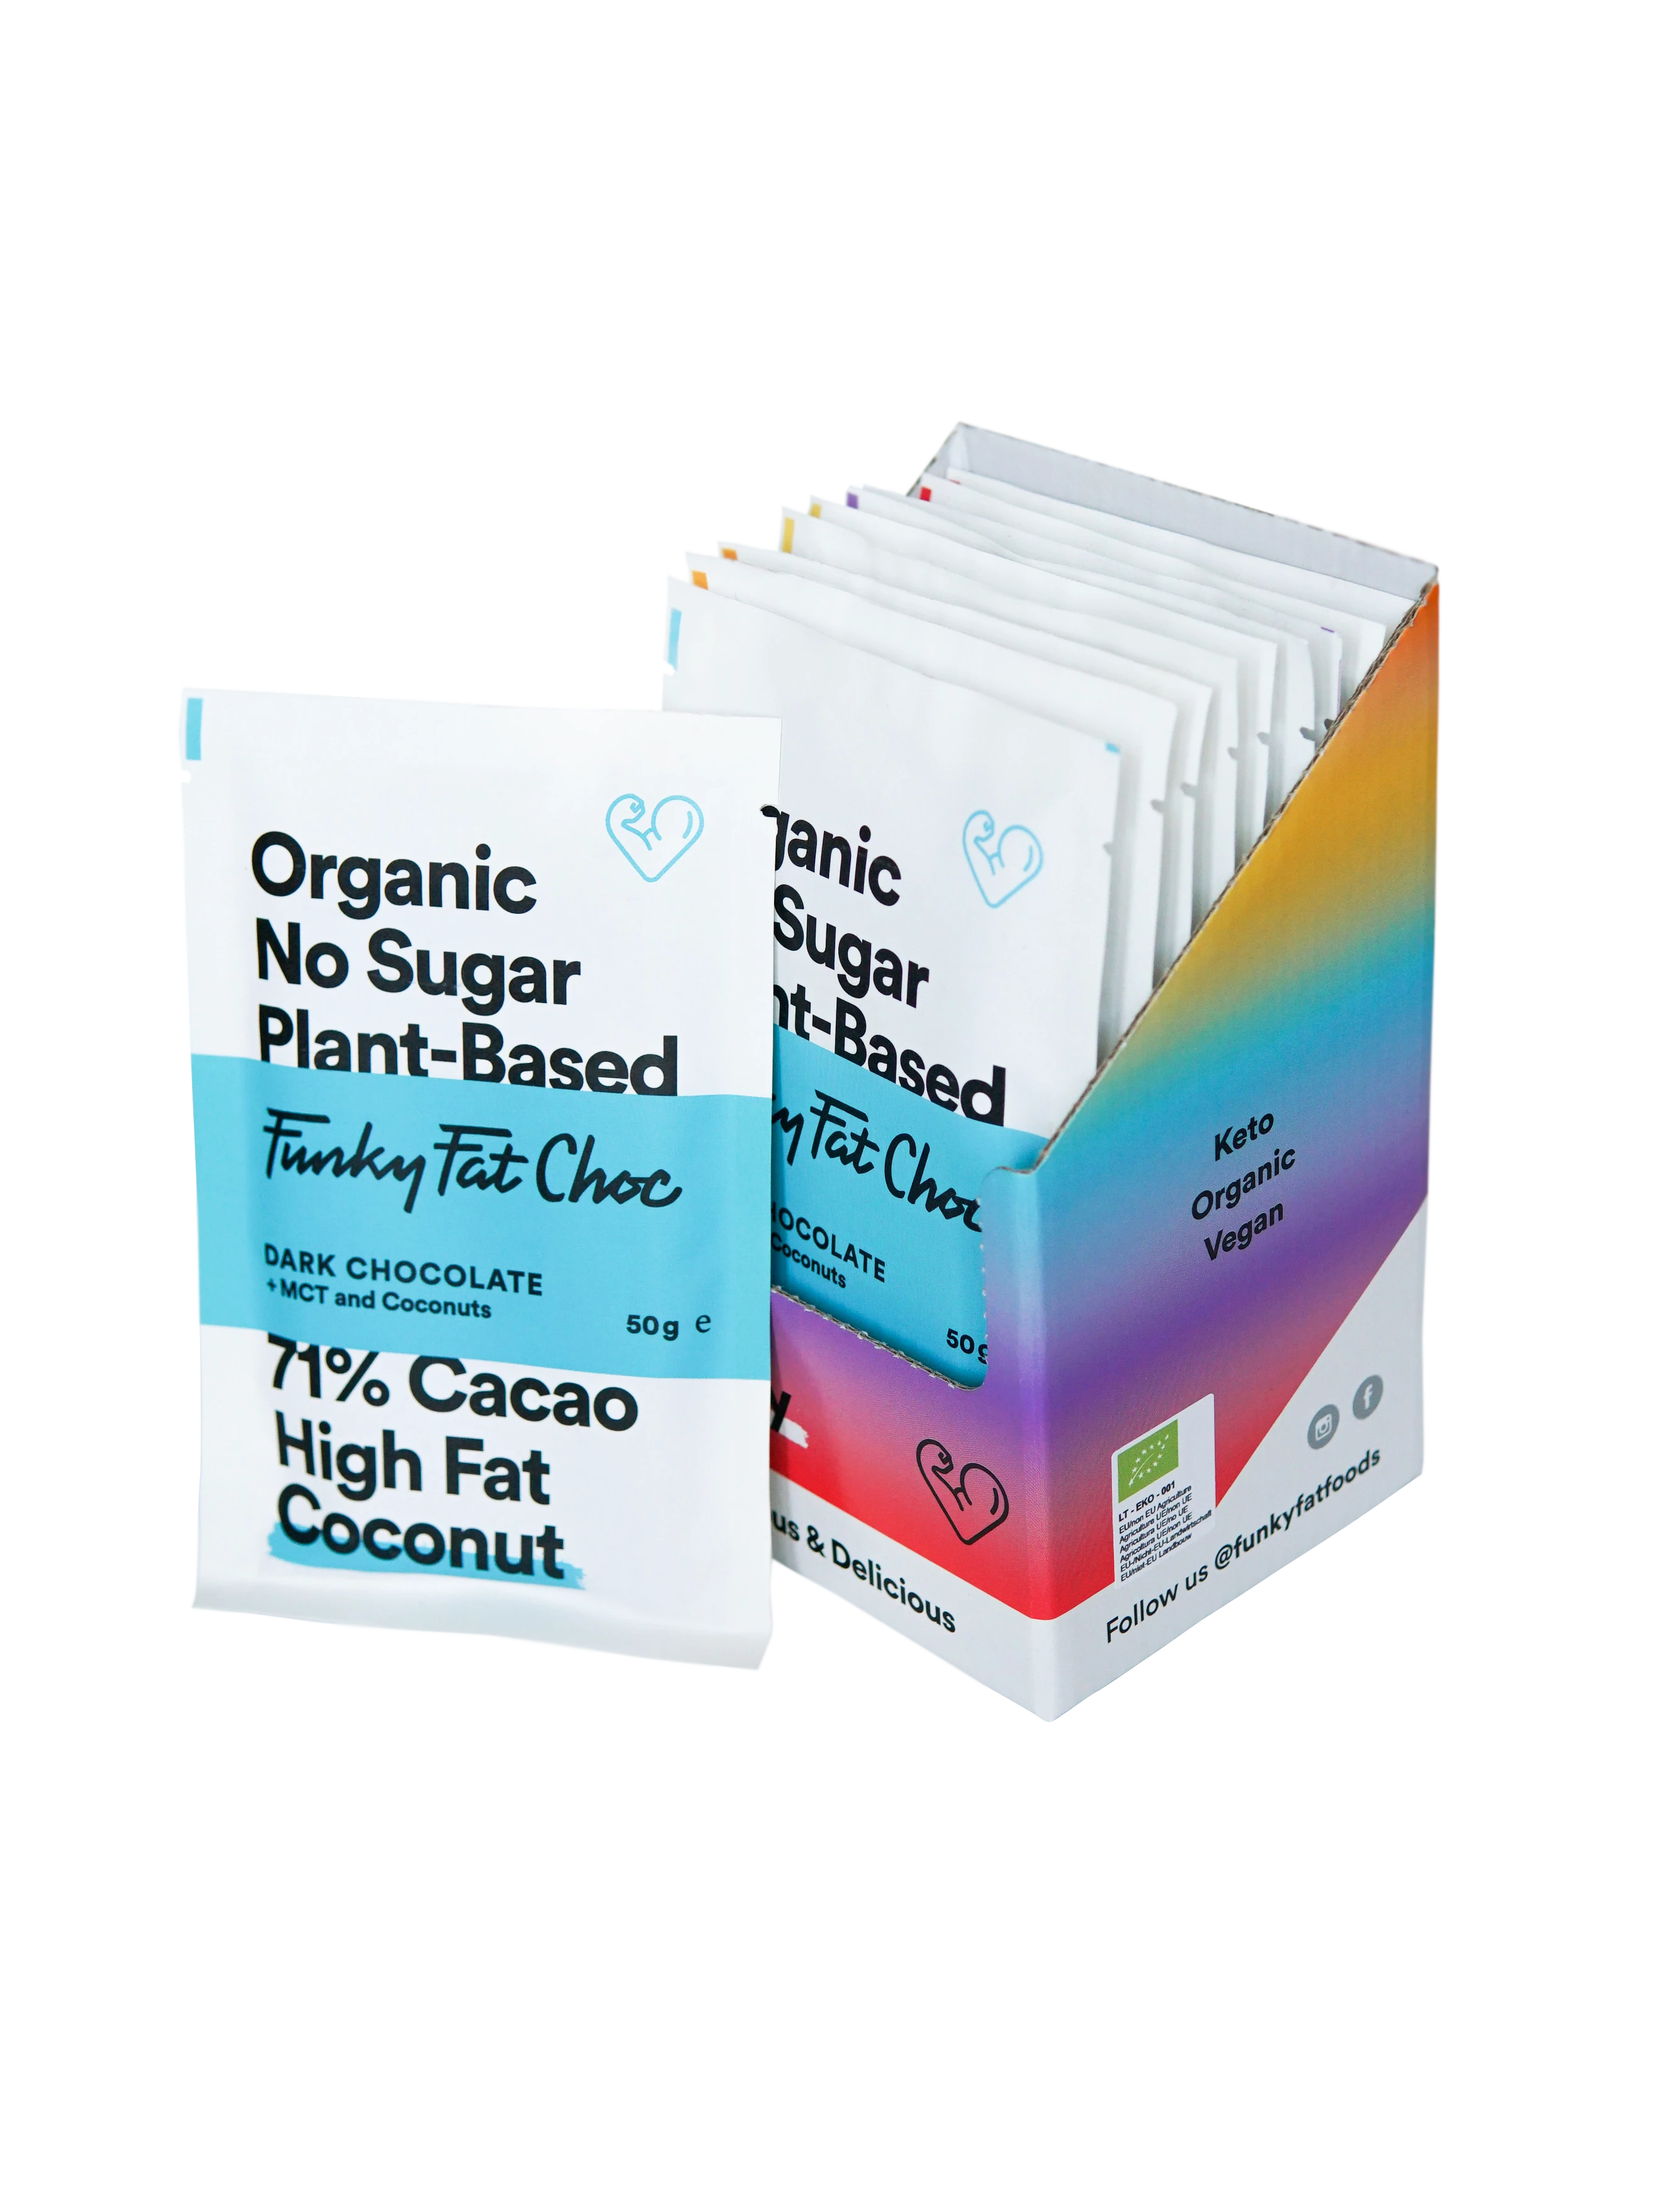 Шоколадные батончики Organic Mix, всего 10 шт. (2 белых шоколада, 2 темных шоколада, 2 кокоса, 2 фундука, 2 кофе) - FUNKY FAT CHOC